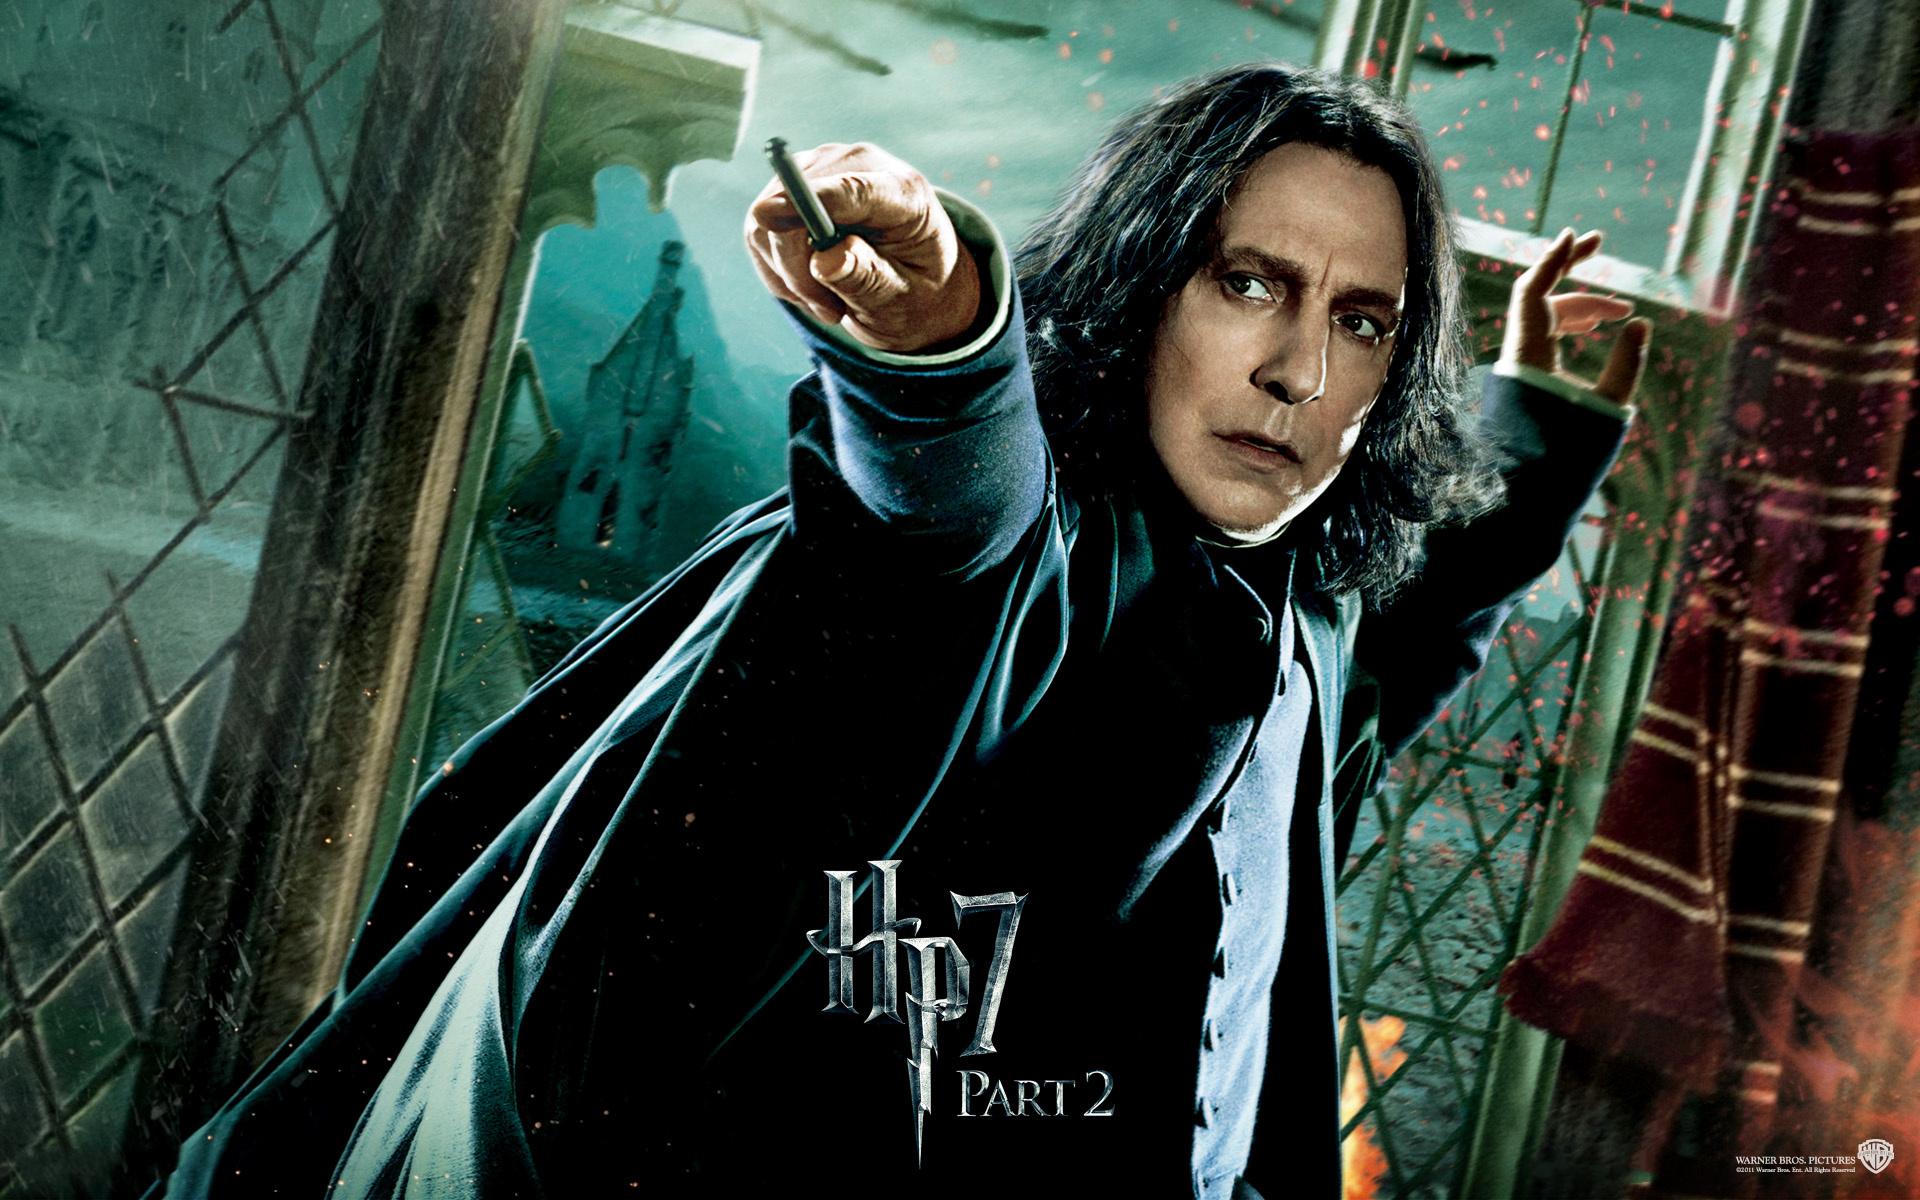 Fondos de Pantalla Harry Potter Harry Potter y las Reliquias de la Muerte  Película descargar imagenes